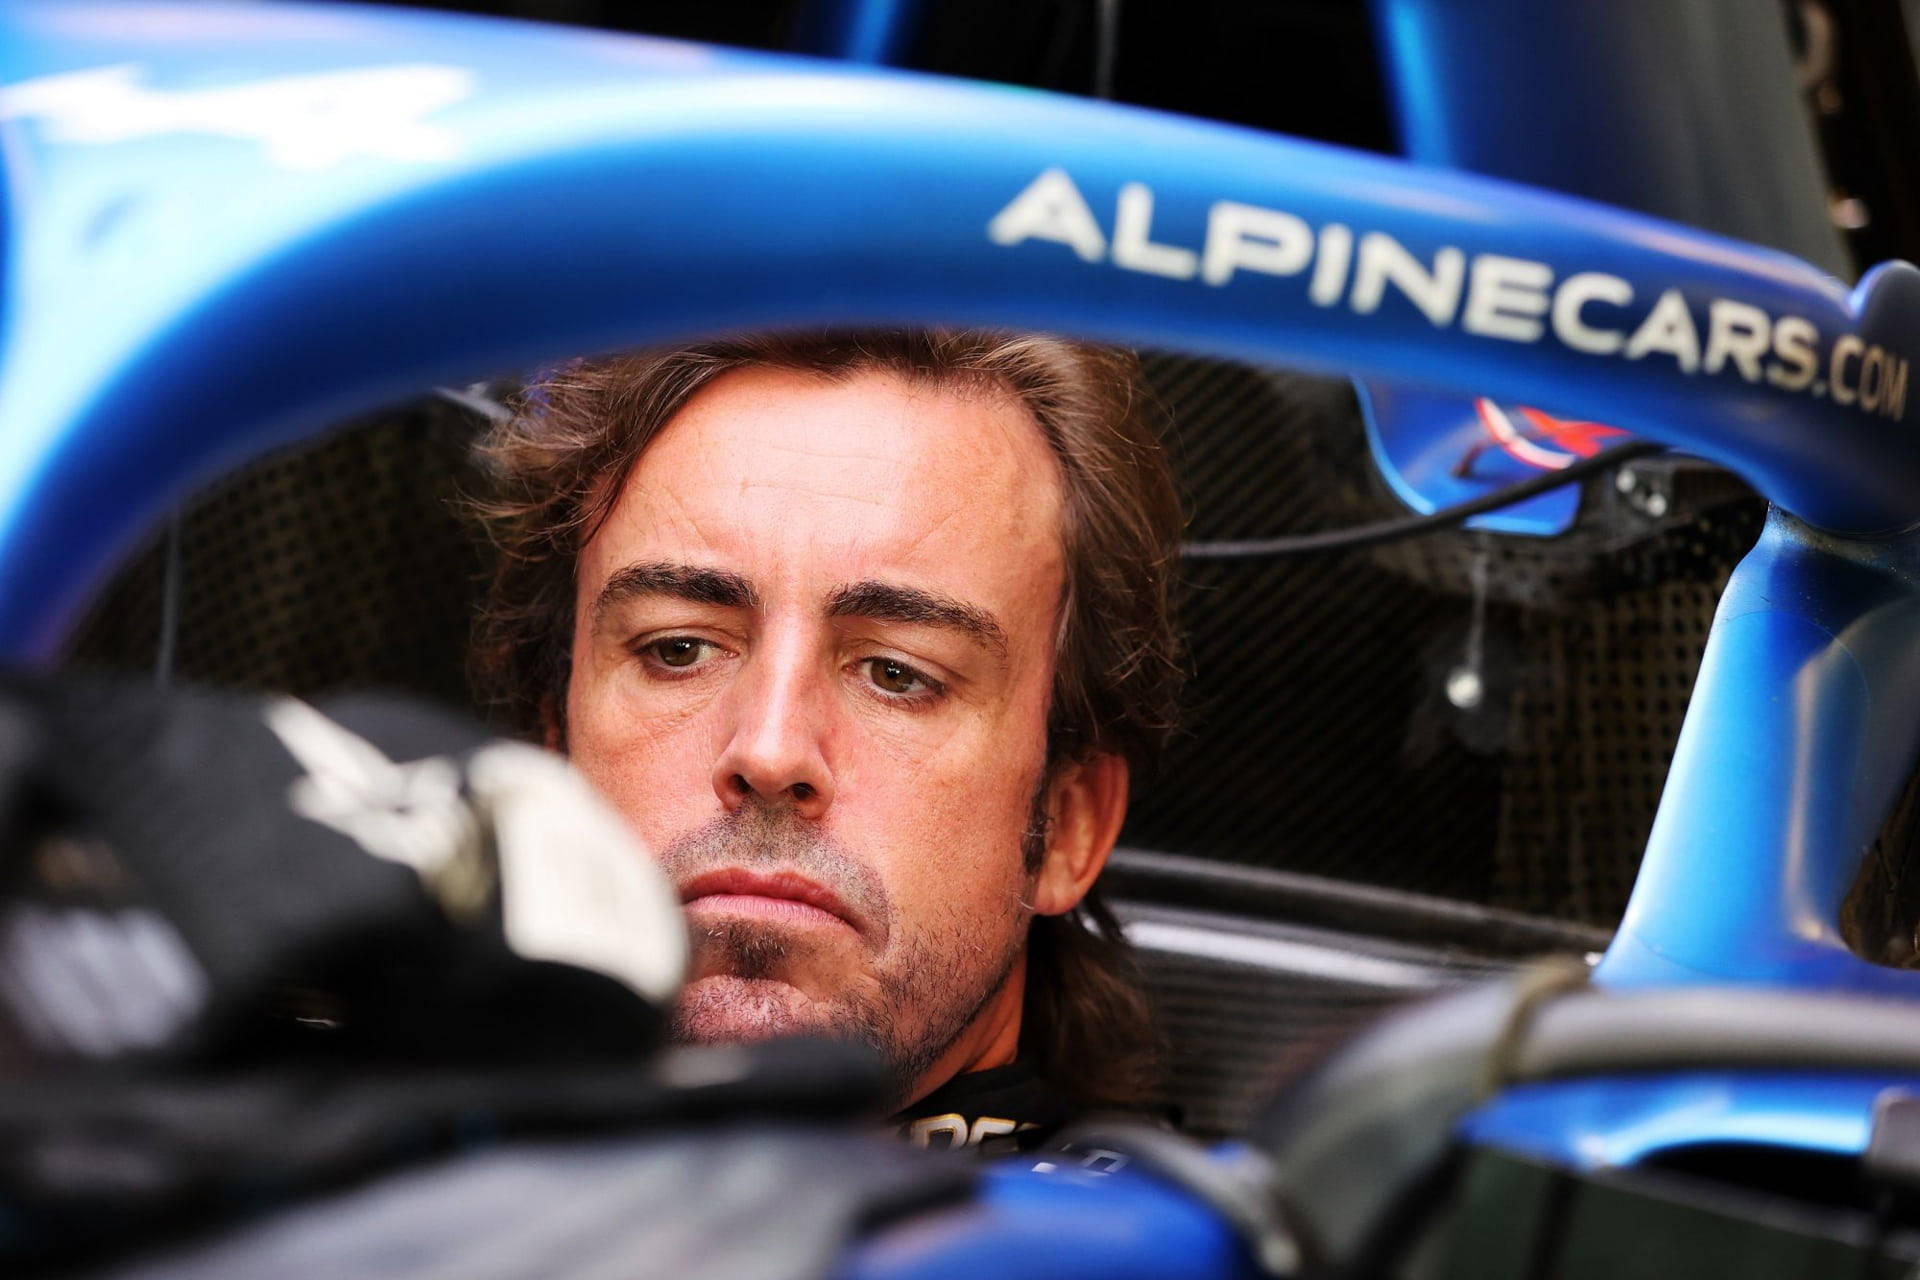 Fernando Alonso In Car Wallpaper